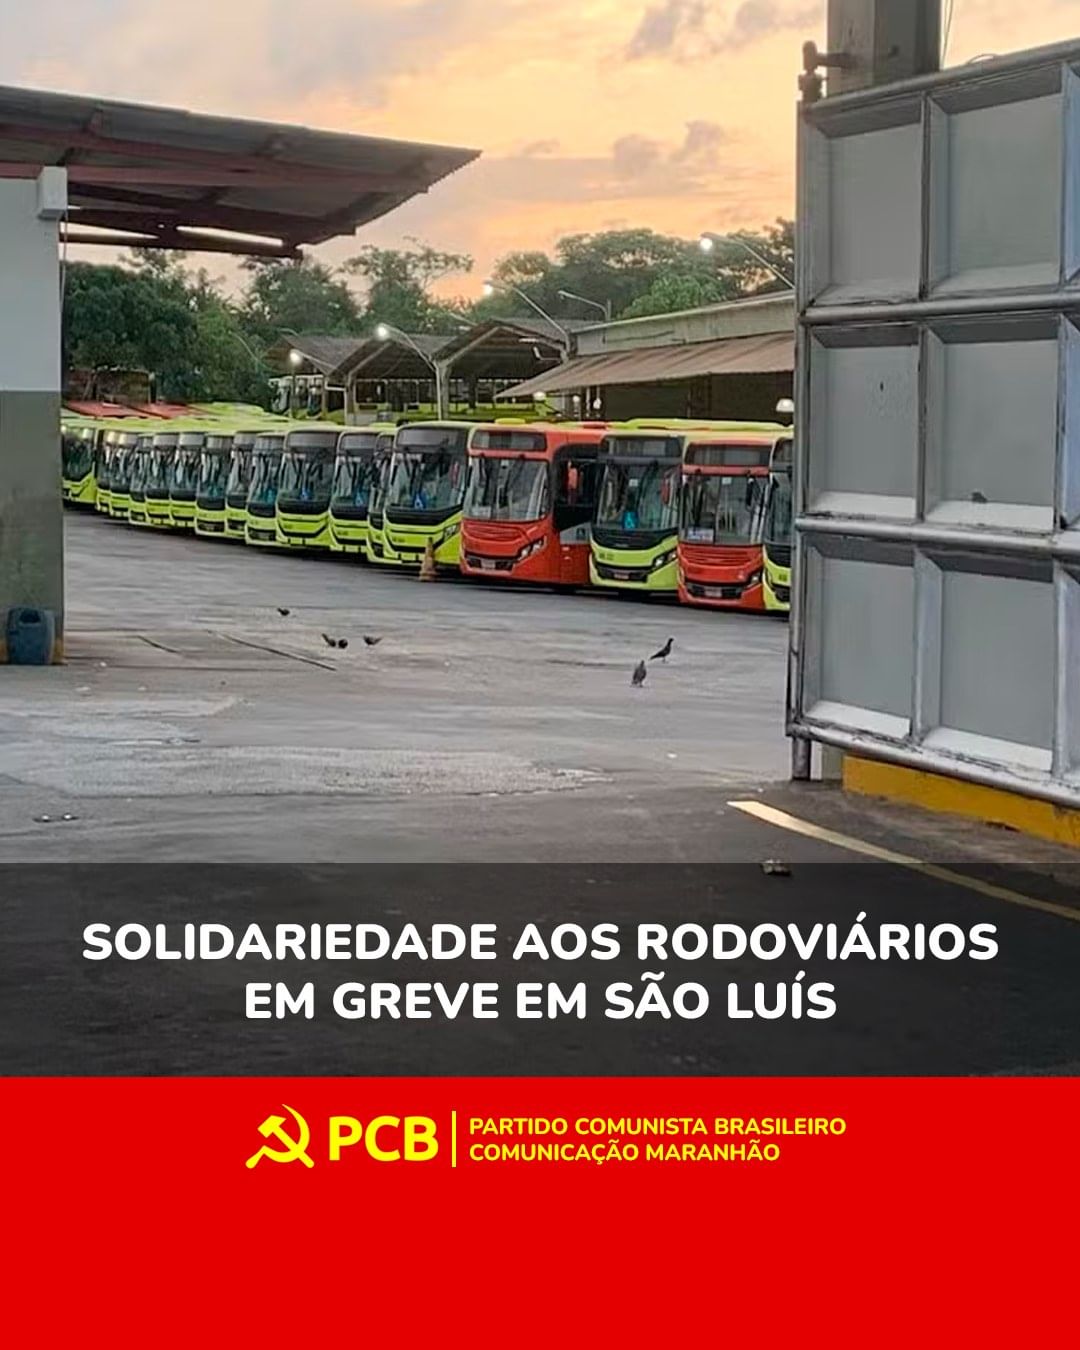 Solidariedade aos rodoviários em greve em São Luís